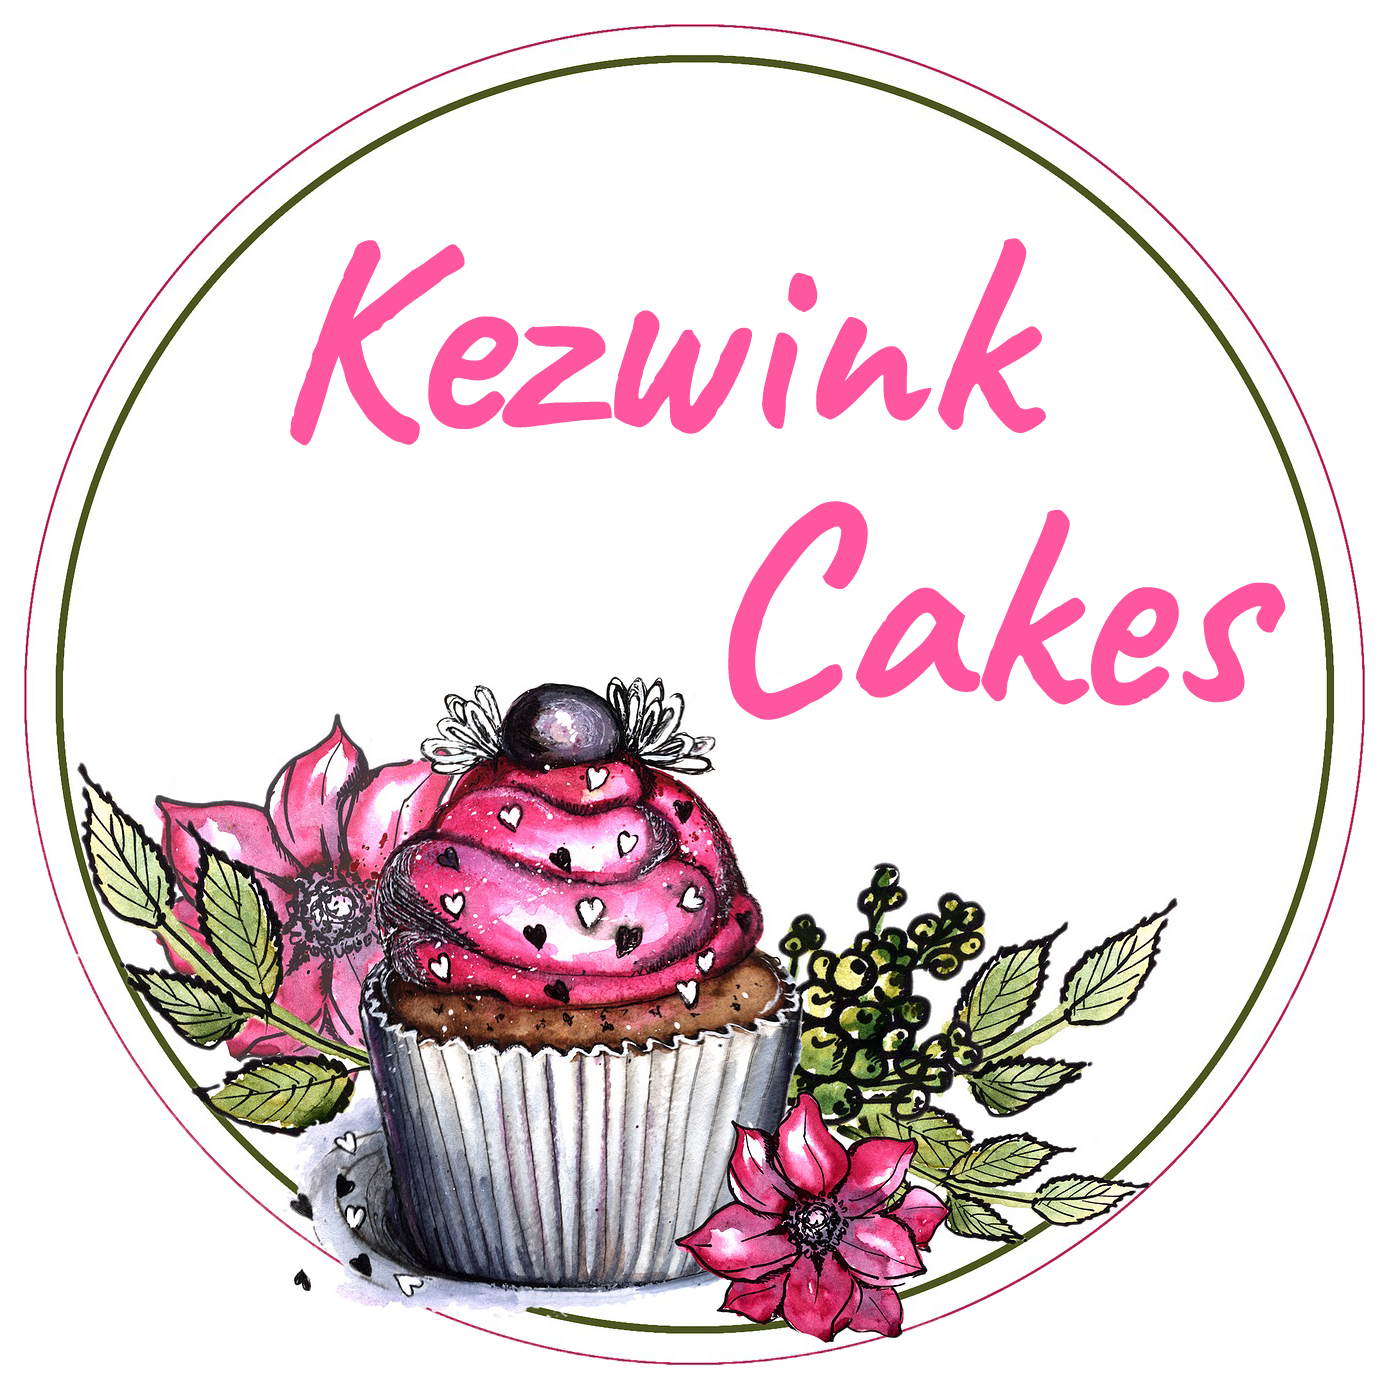 Kezwink Cakes